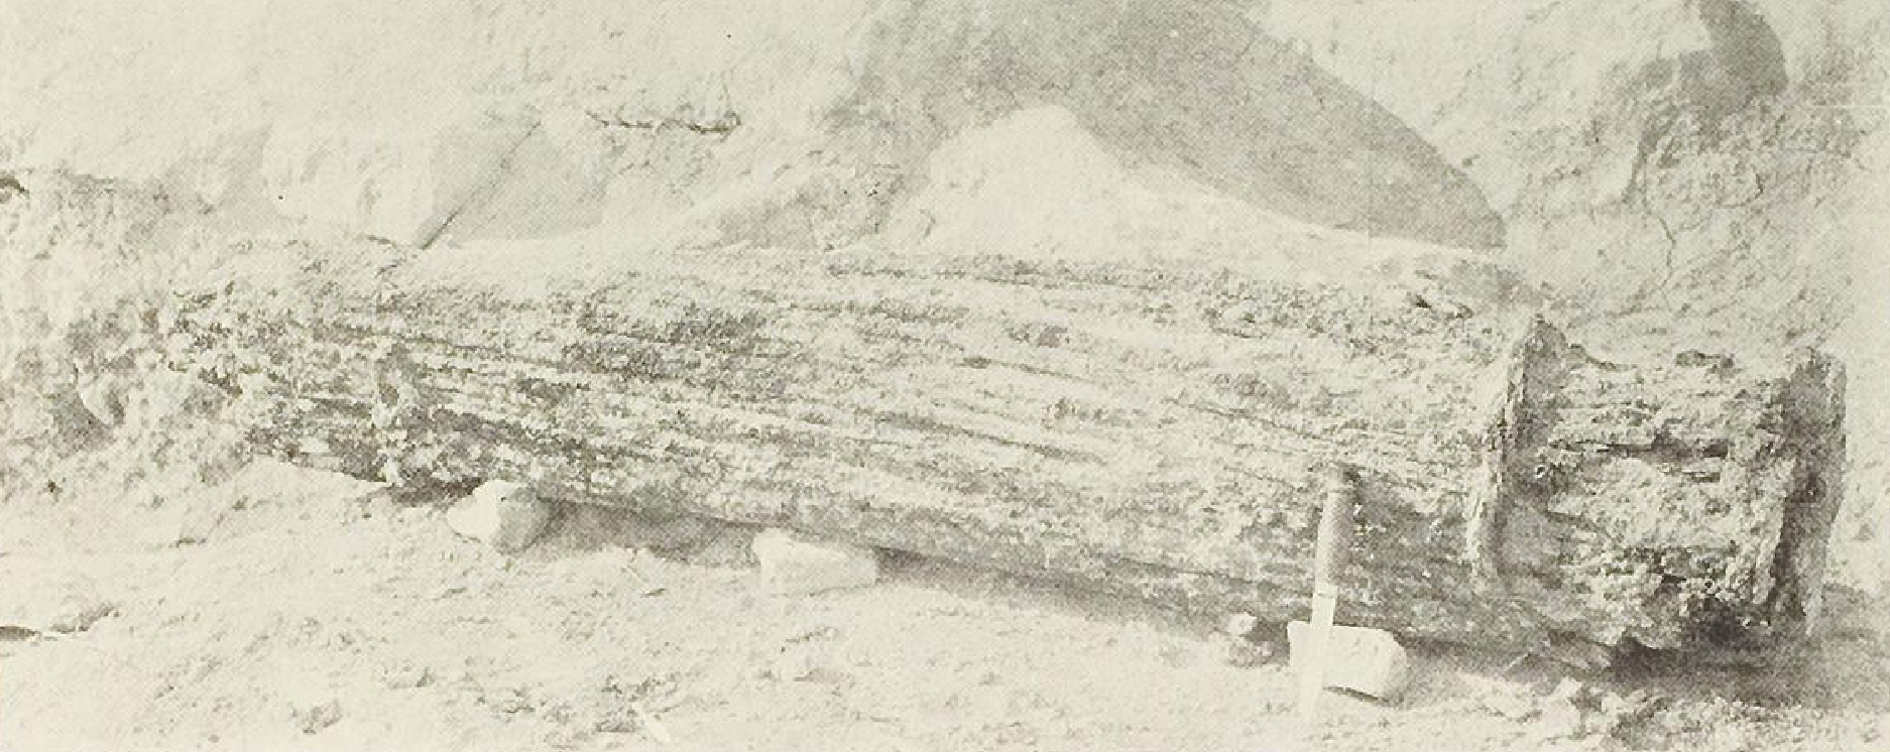 Band of obols excavated at the Heraeum of Argos